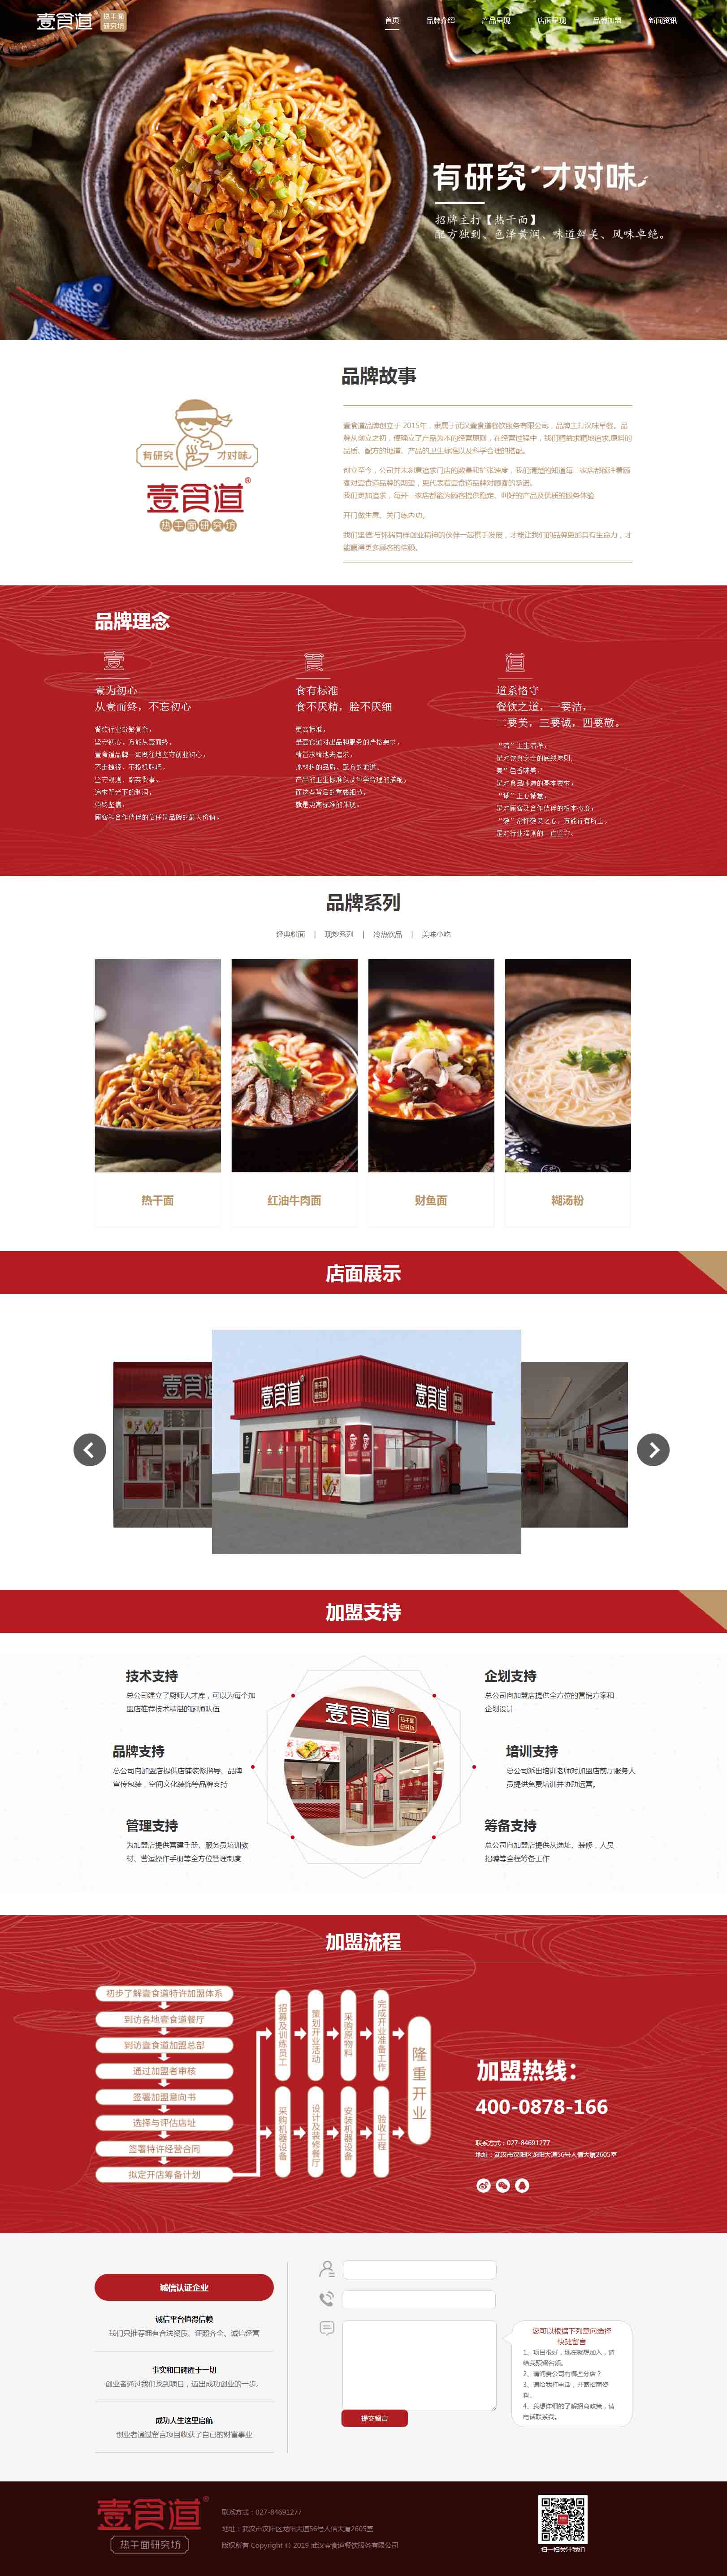 武汉壹食道餐饮服务有限公司与我司签订网站合同